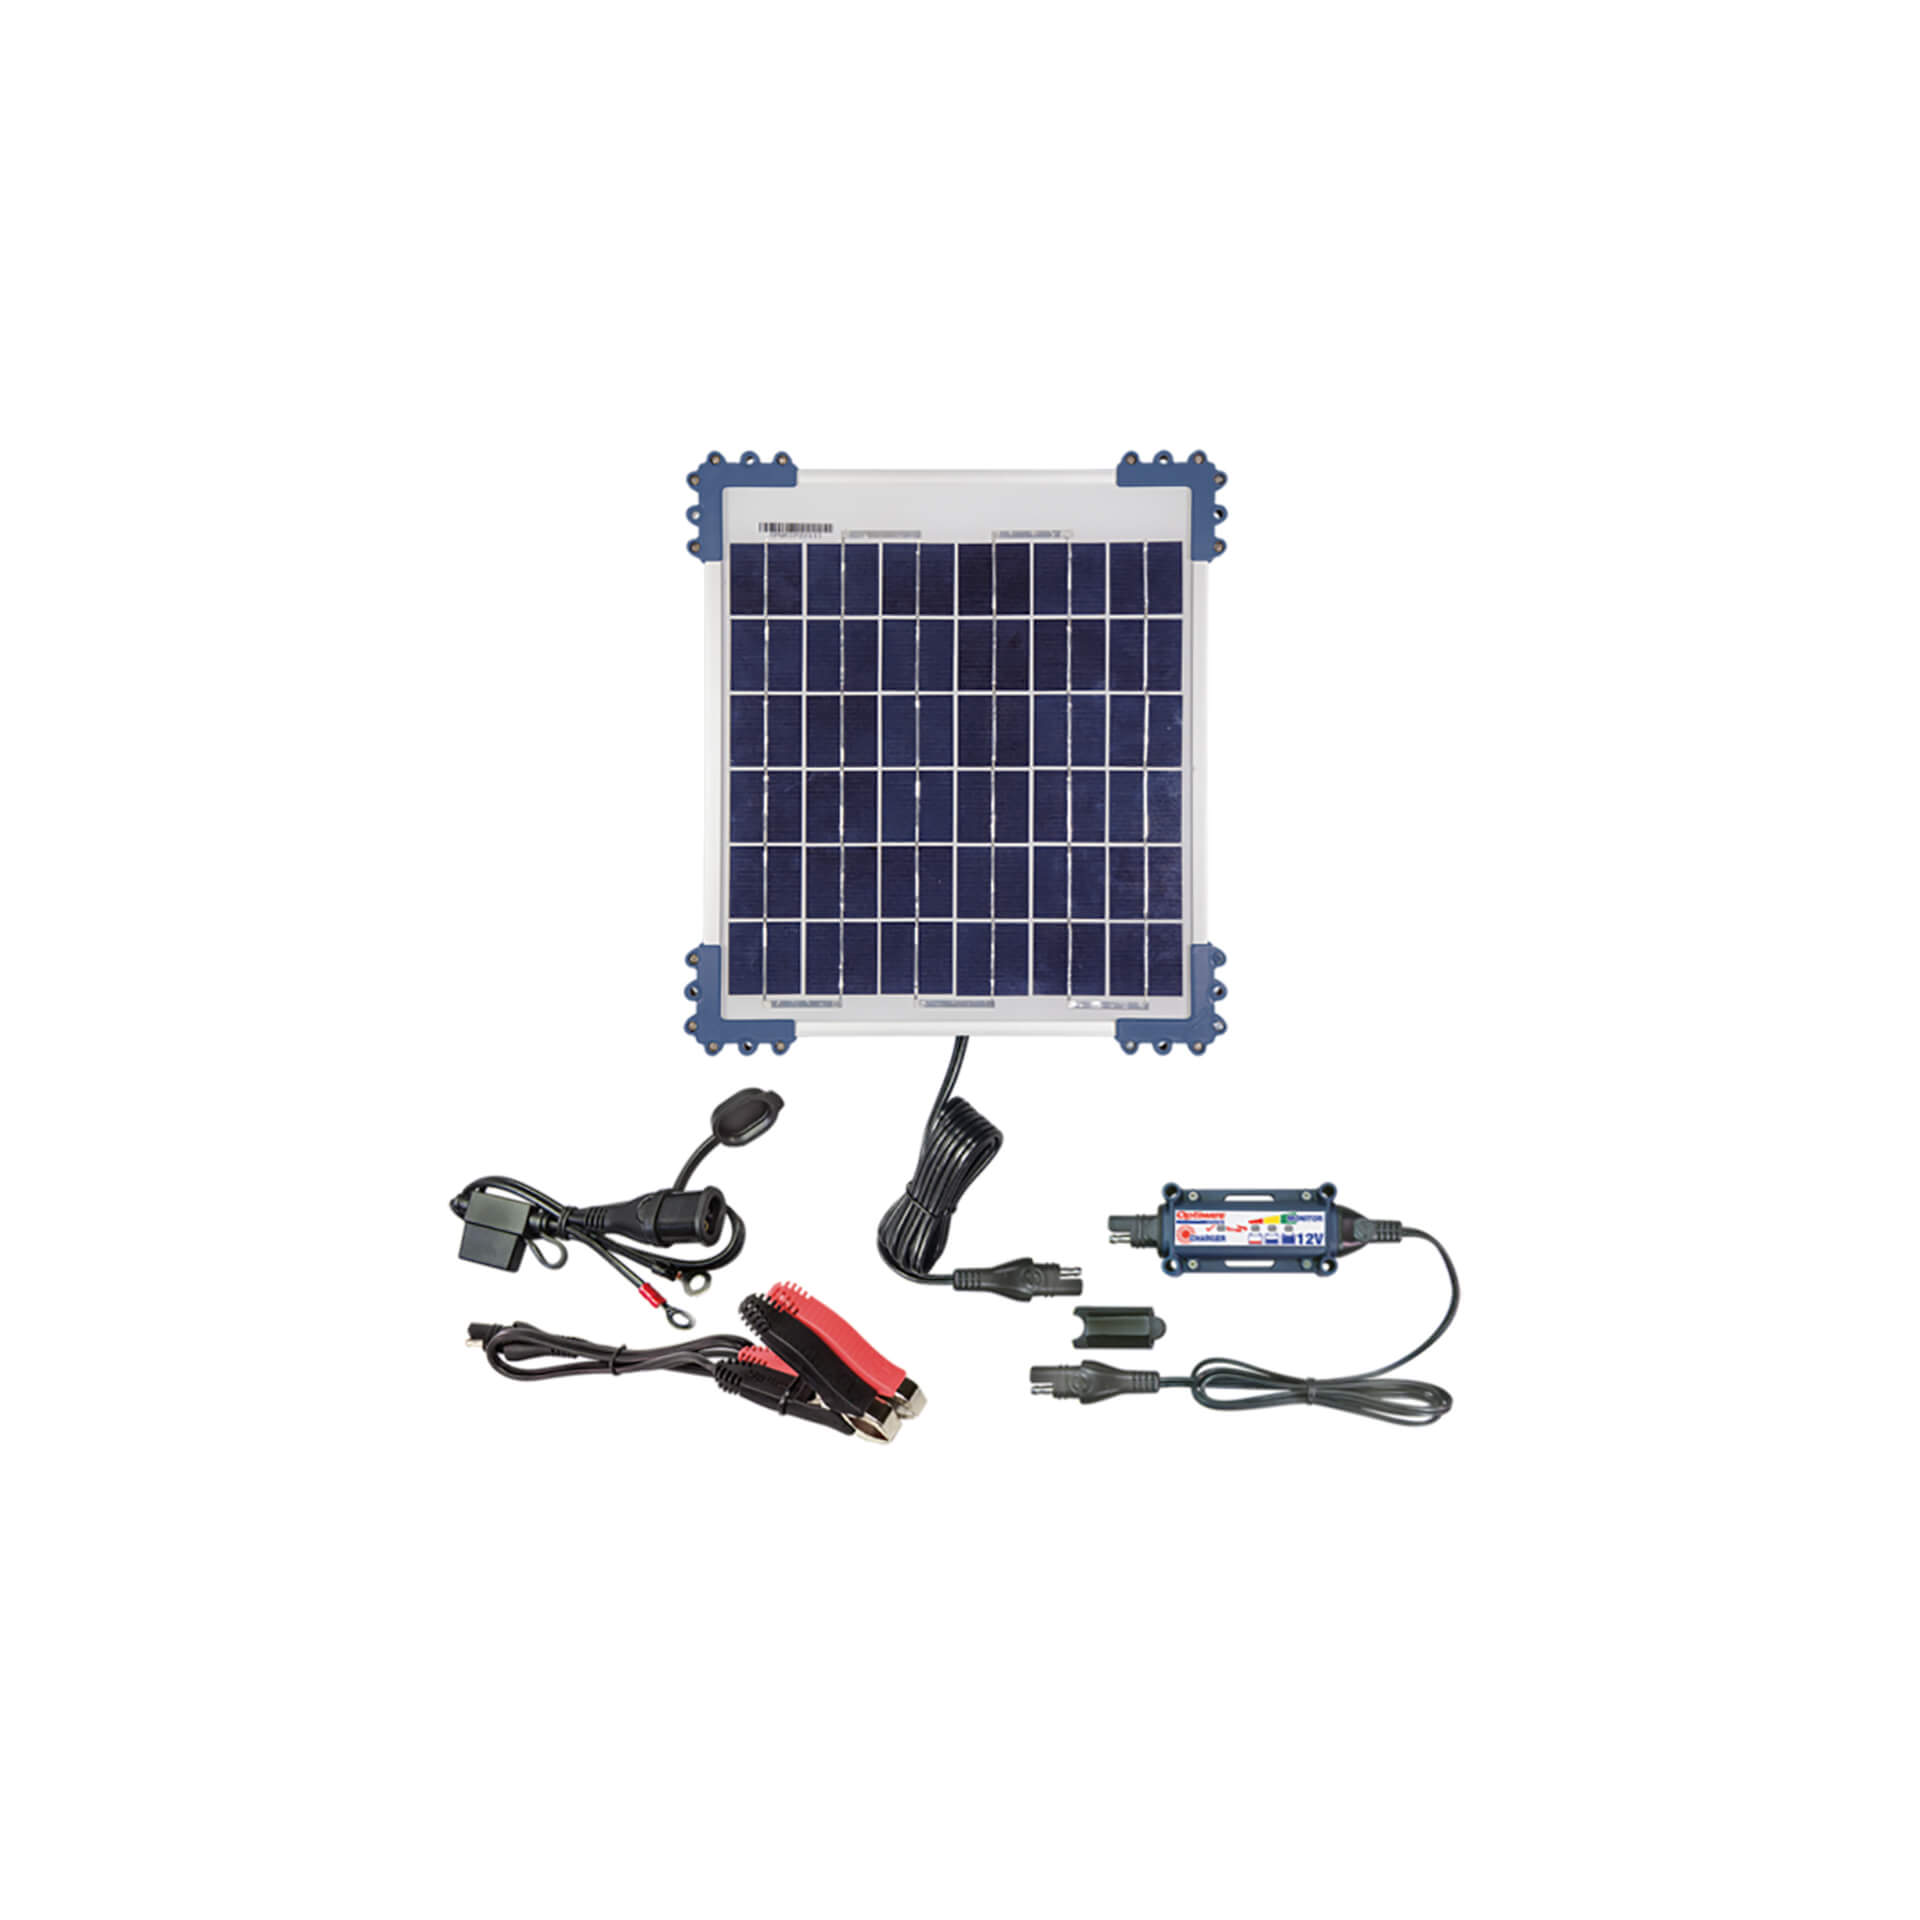 optimate Solar DUO Charger 10 Watt for Lead/GEL/AGM/LFP